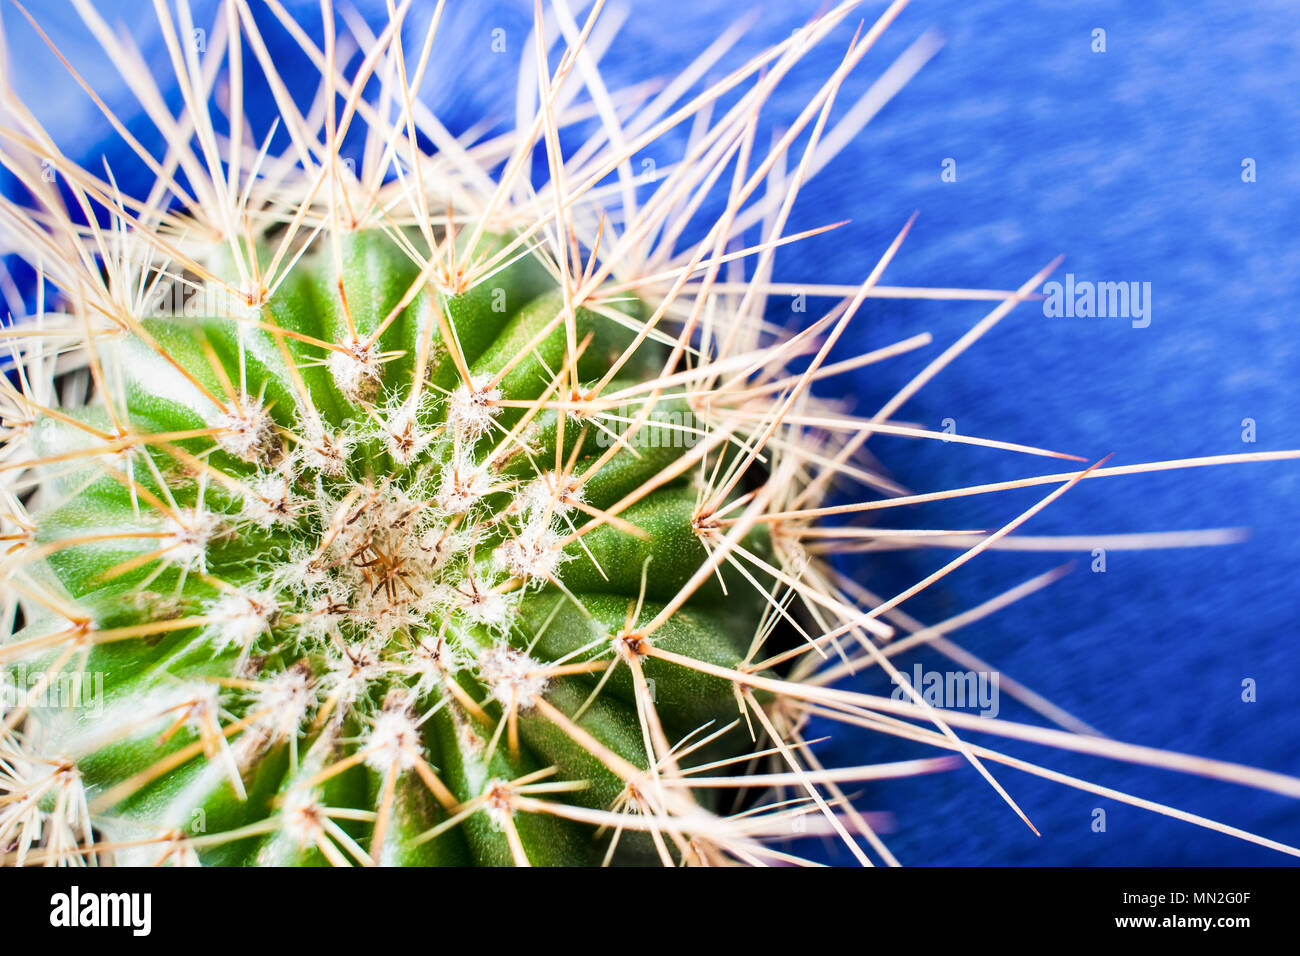 Vue de dessus du cactus vert avec de longues épines sur fond bleu texturé lumineux. Banque D'Images